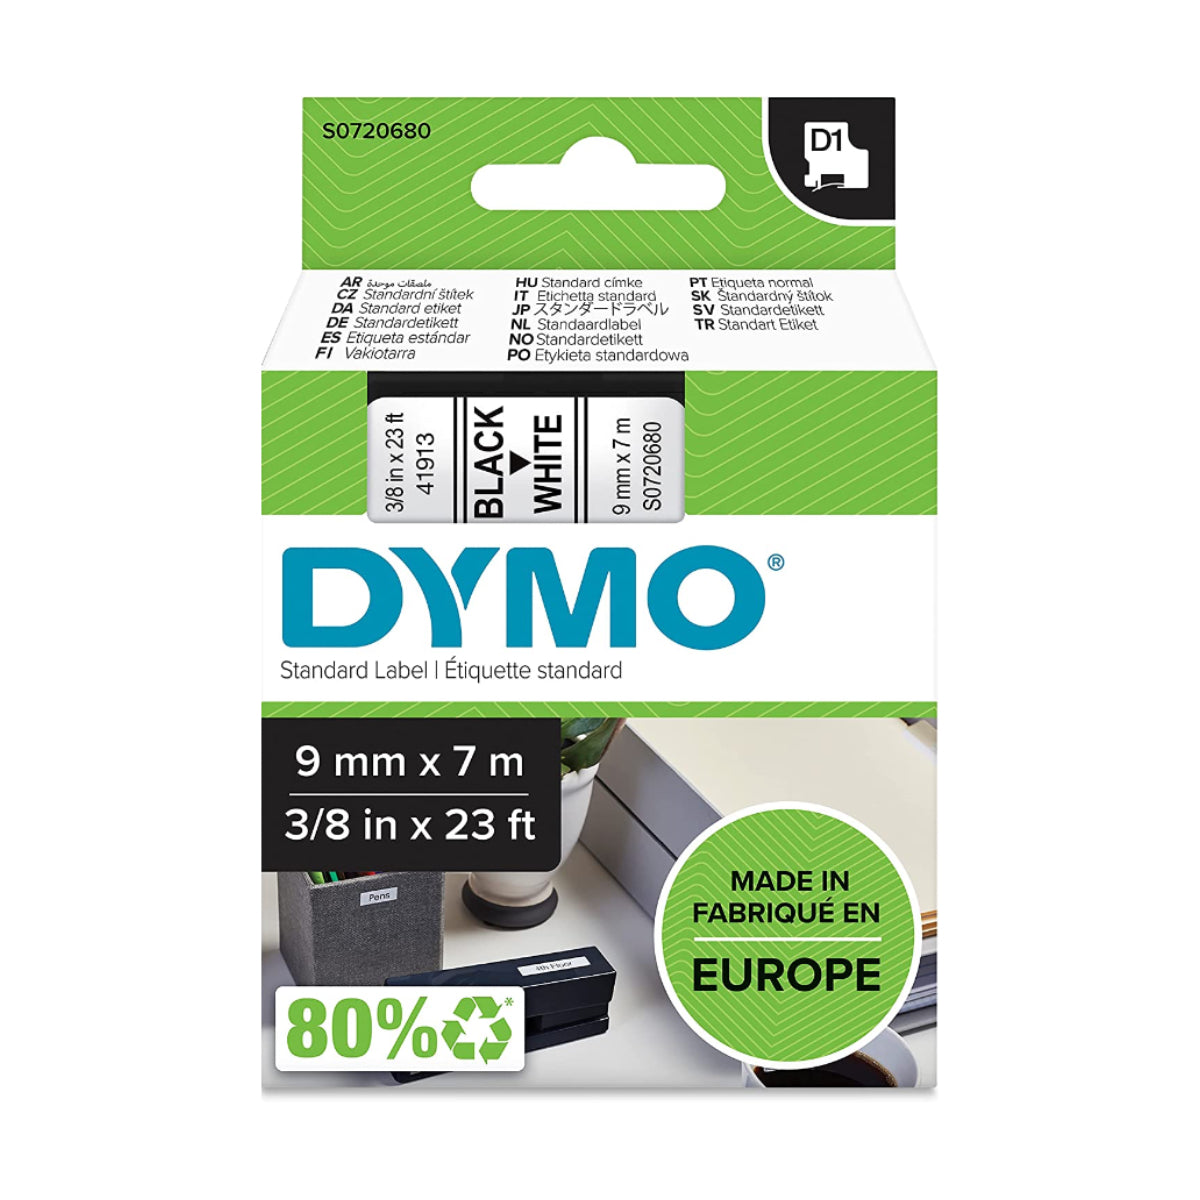 Dymo D1 Label Cassette, 9 mm x 7 m, Black on White - 41913